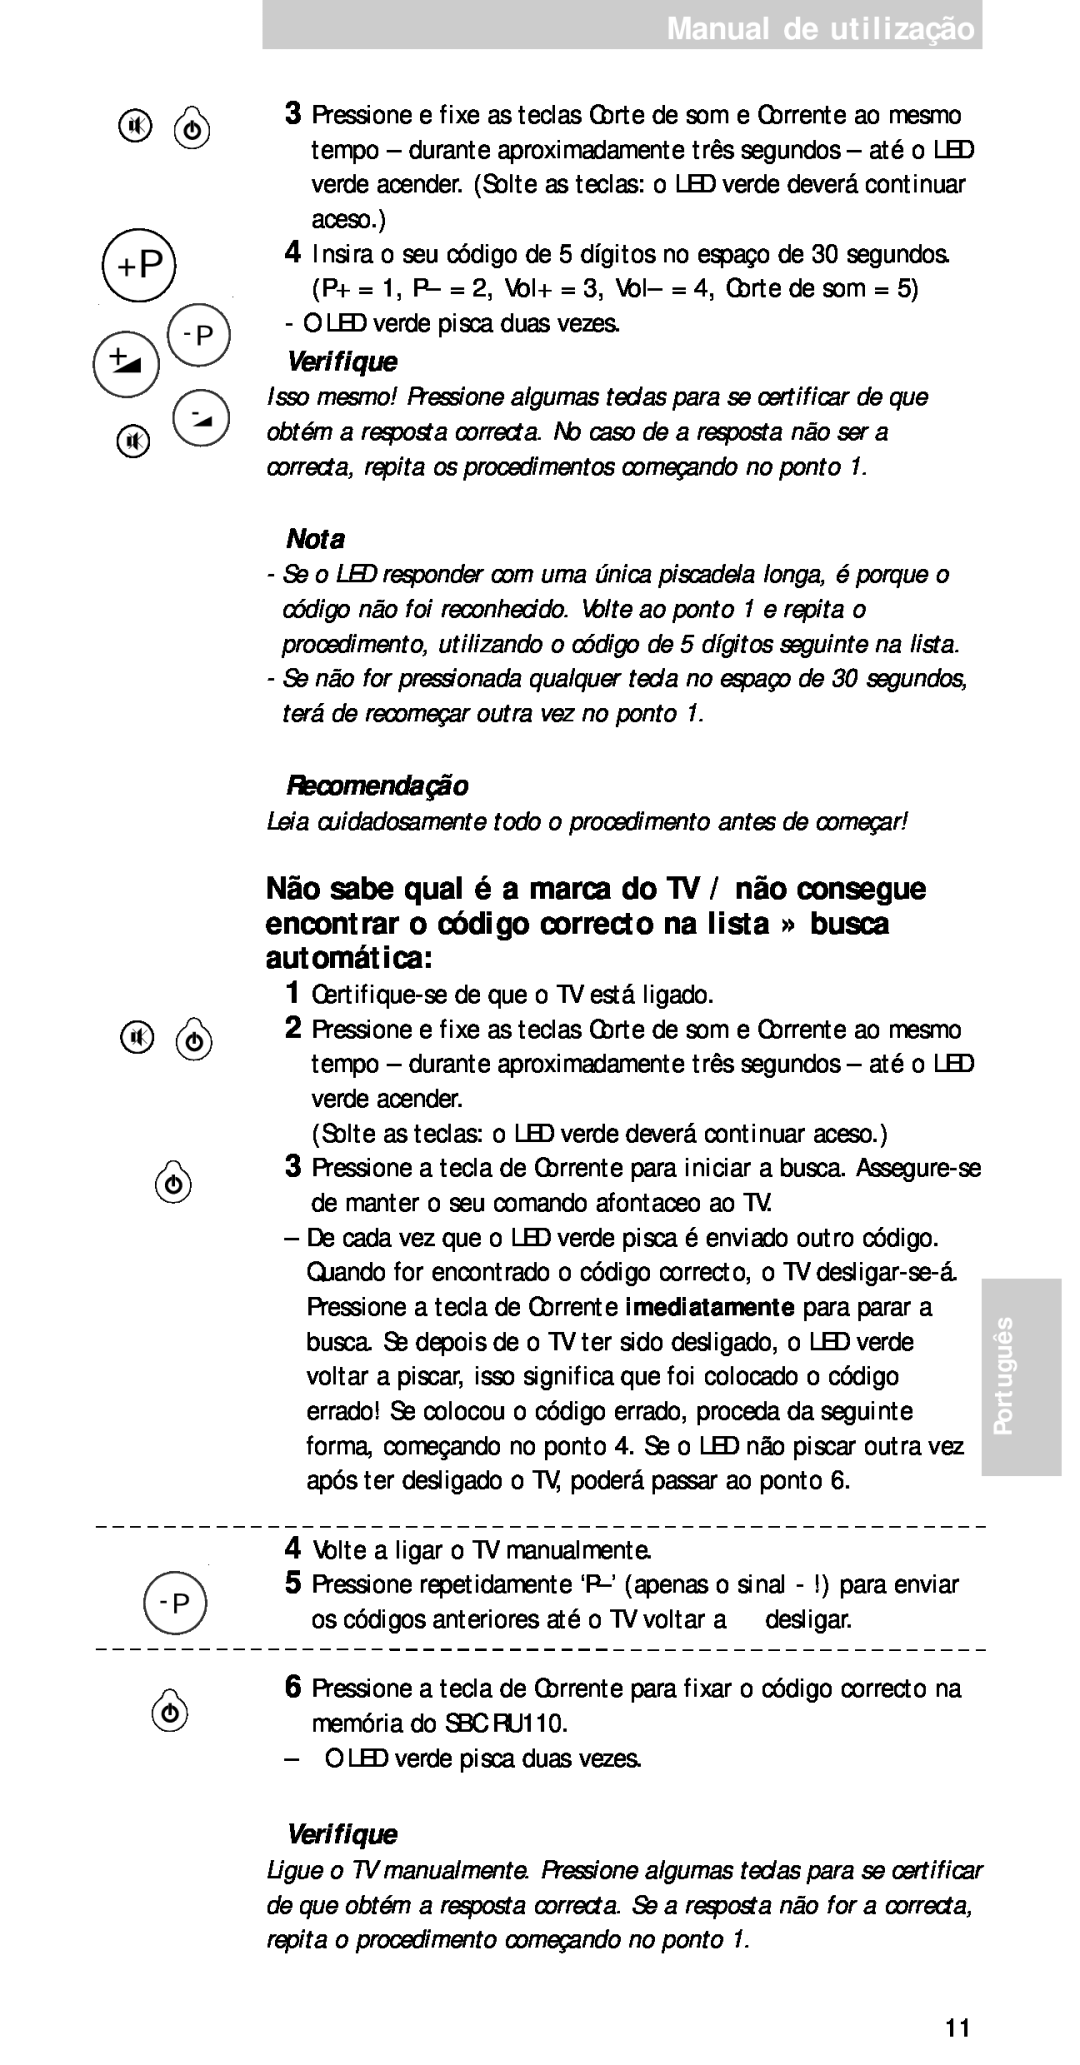 Philips sbc ru 110 manual Manual de utilização, Verifique, Nota, Recomendação, Português 